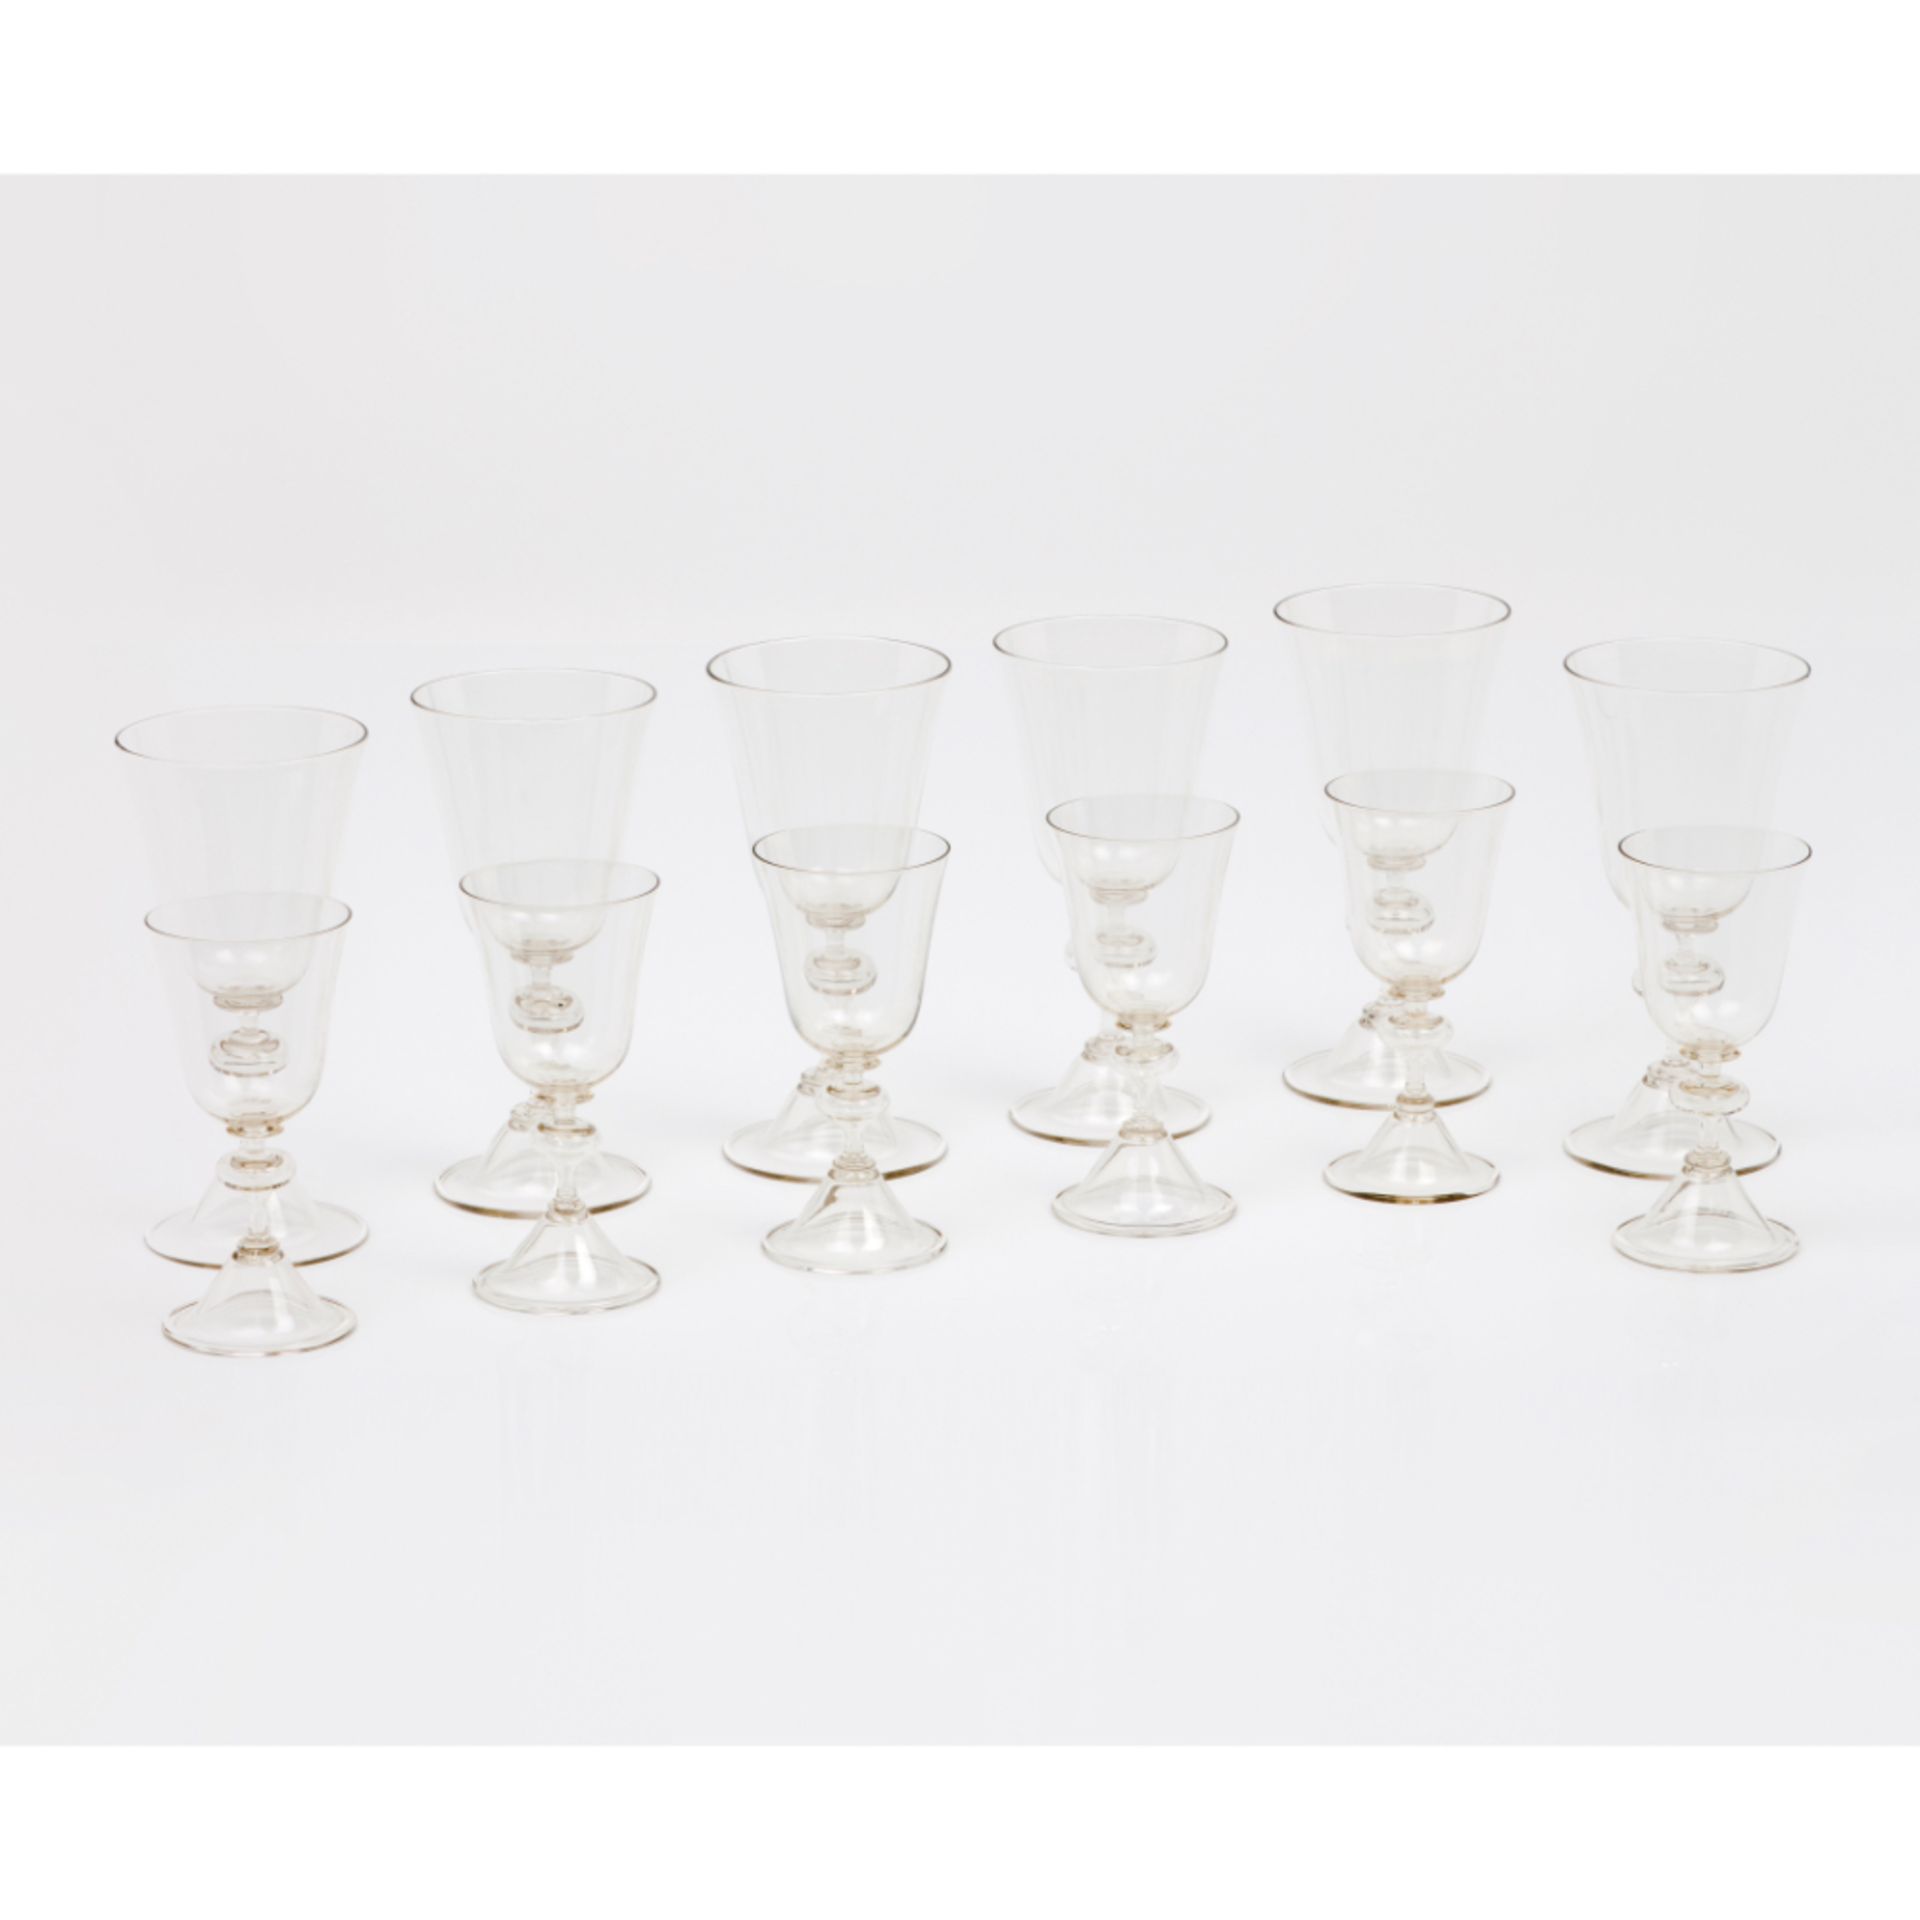 A set of 6 white wine glasses